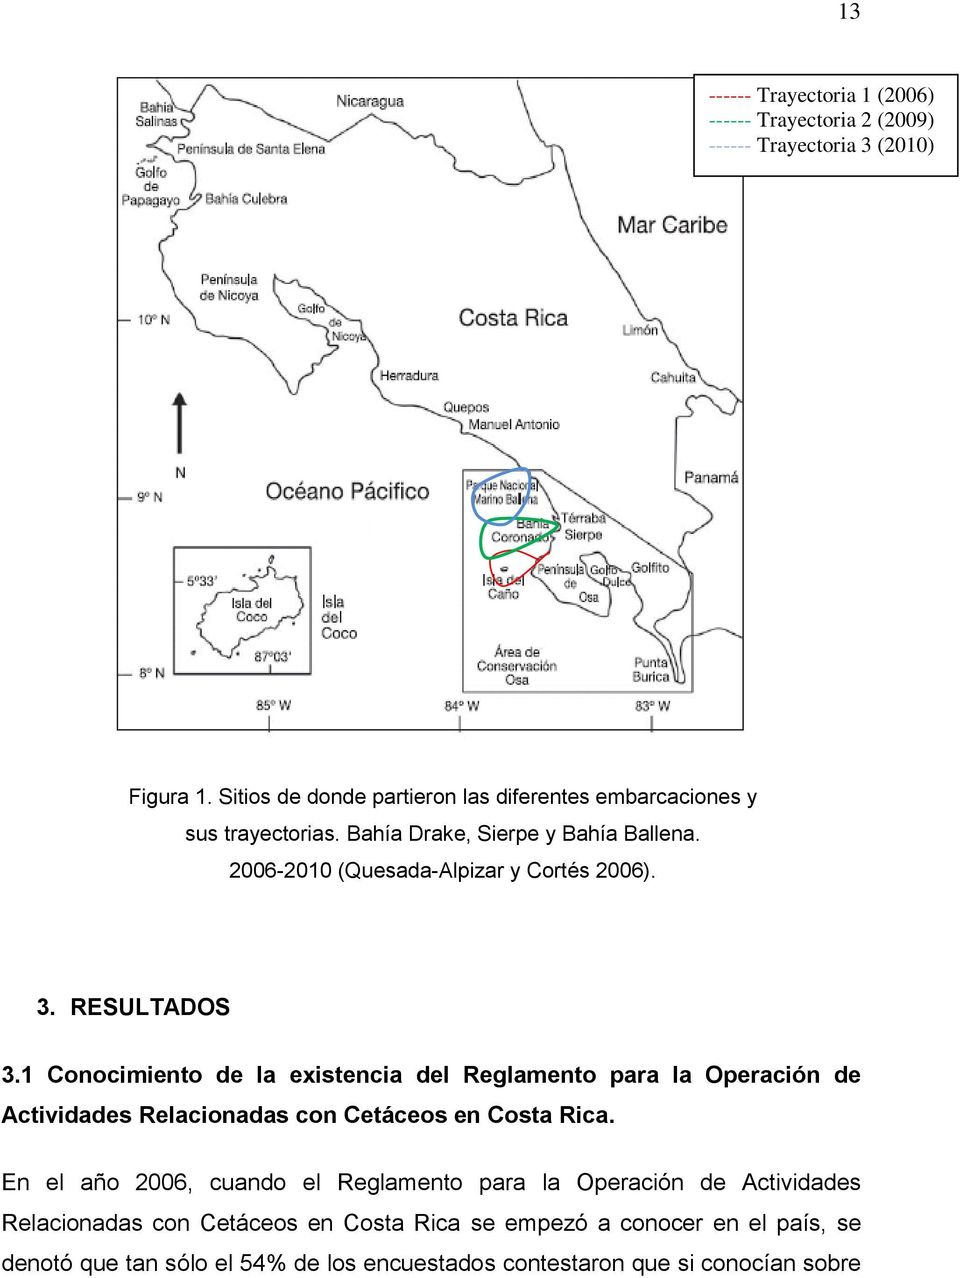 3. RESULTADOS 3.1 Conocimiento de la existencia del Reglamento para la Operación de Actividades Relacionadas con Cetáceos en Costa Rica.